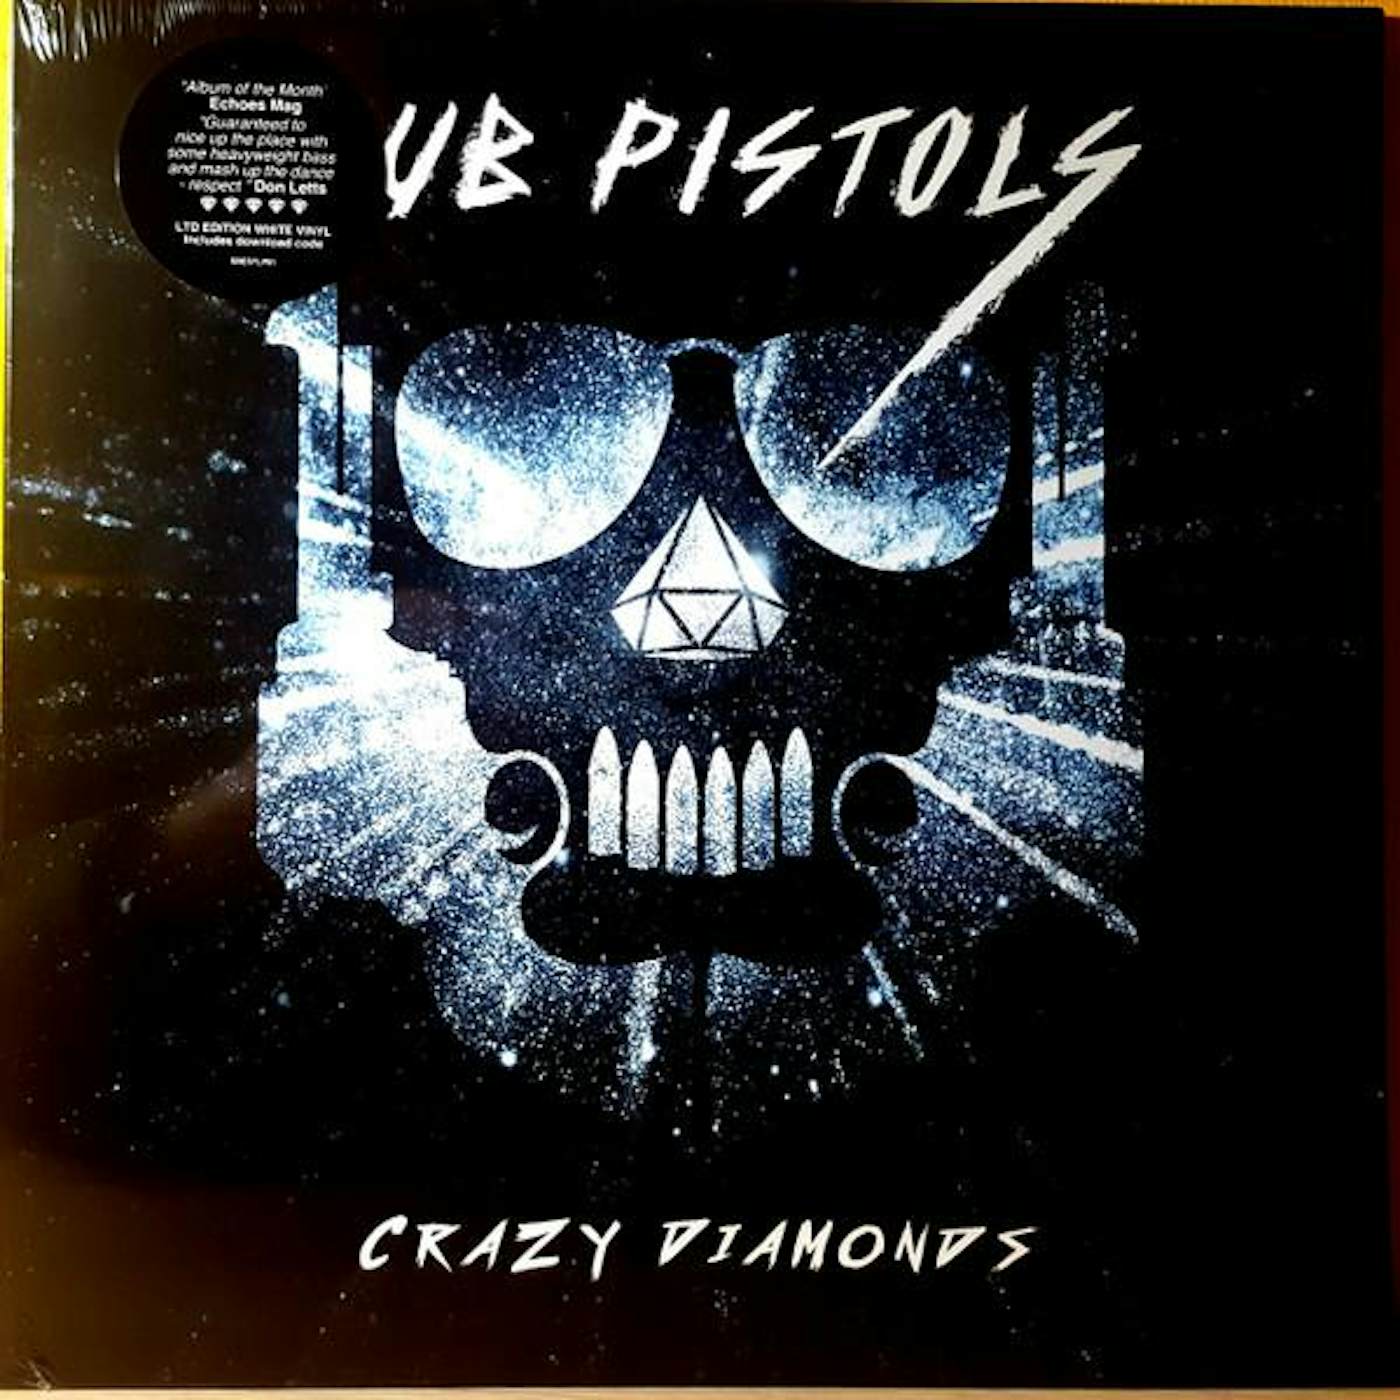 Dub Pistols CRAZY DIAMONDS Vinyl Record